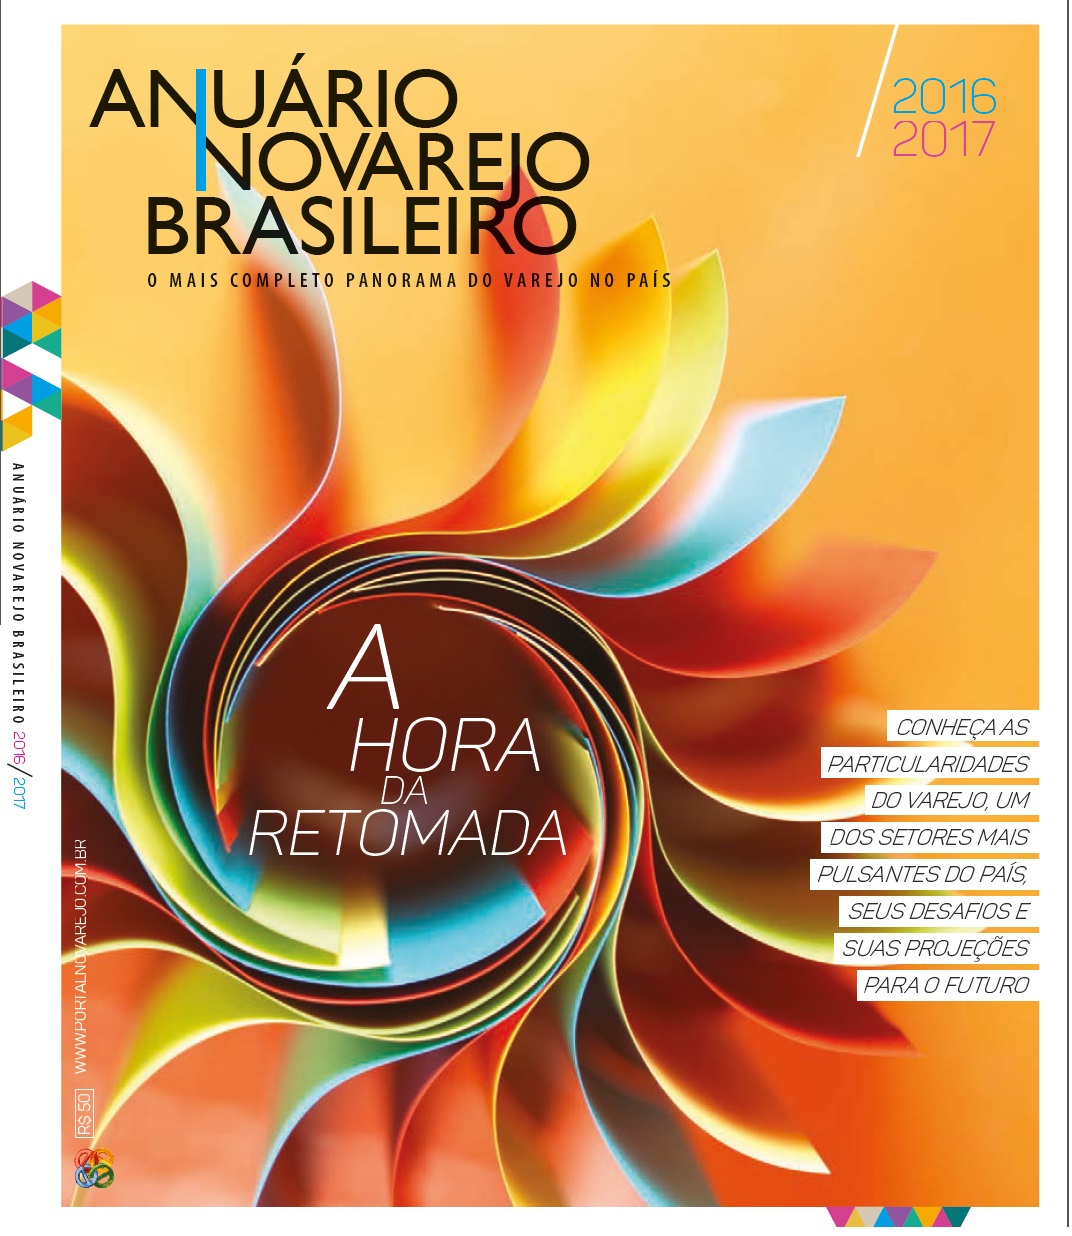 Consumoteca no Anuário Novarejo Brasileiro 2016_CAPA